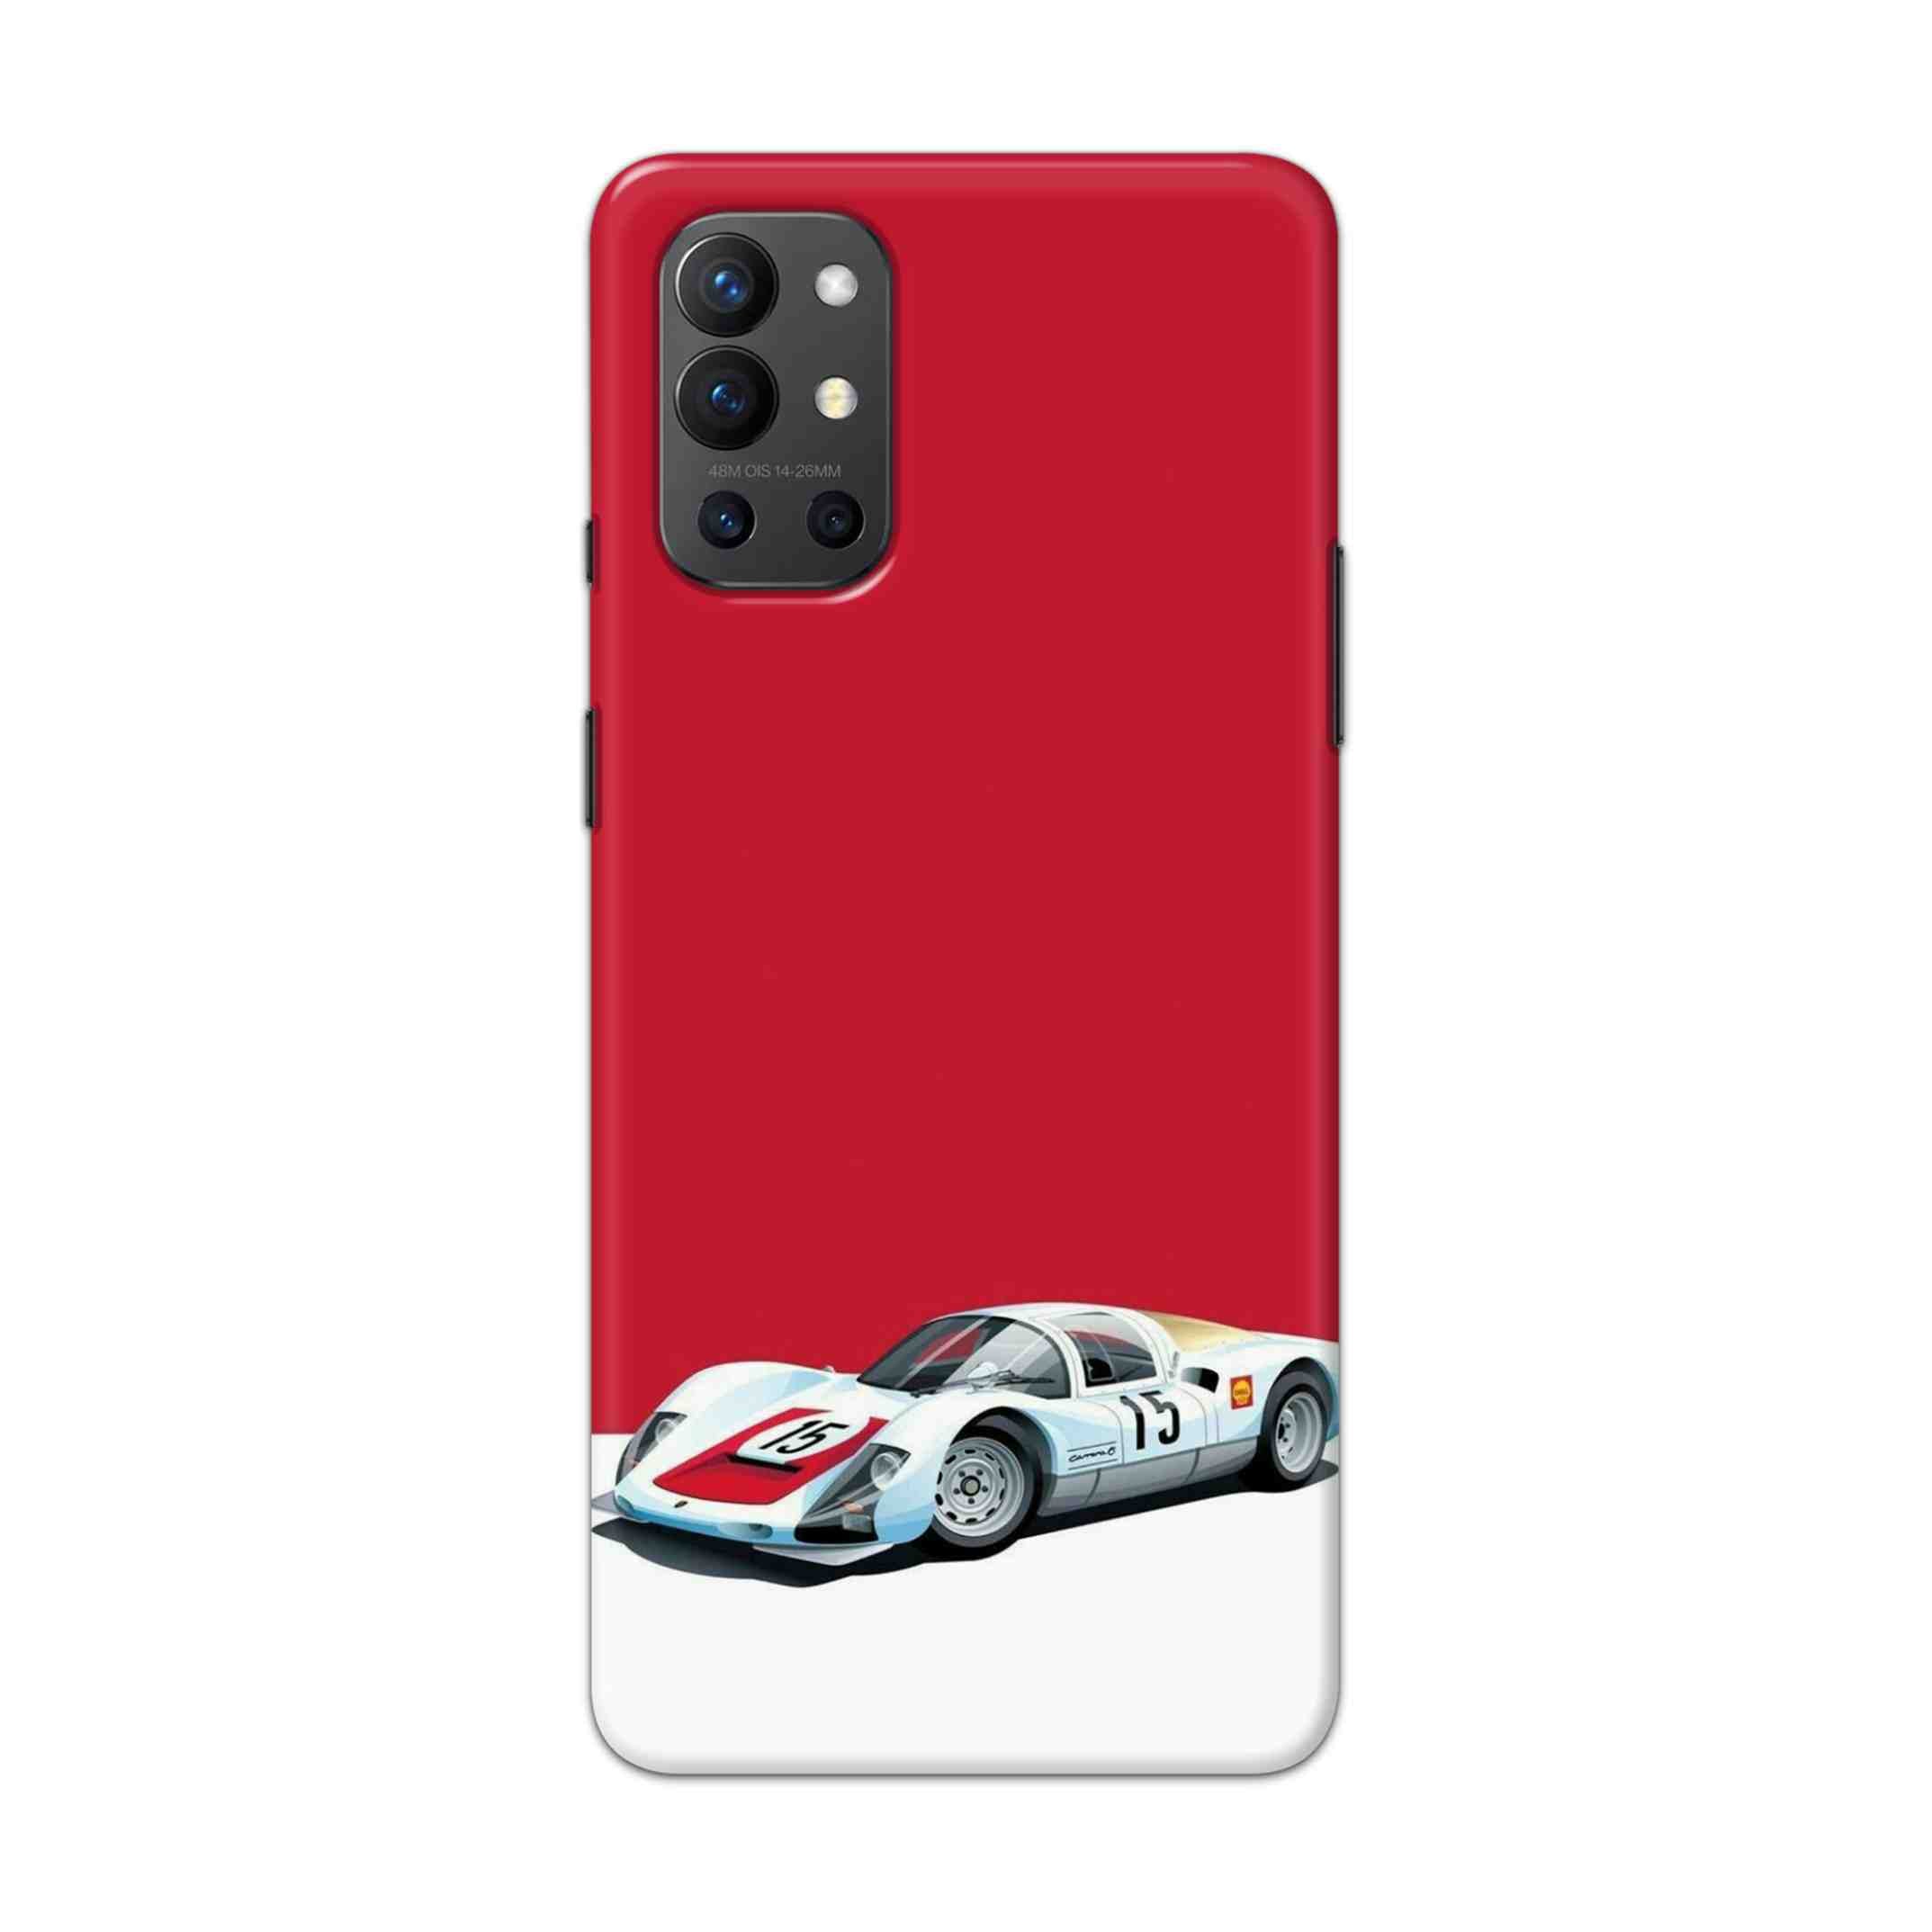 Buy Ferrari F15 Hard Back Mobile Phone Case Cover For OnePlus 9R / 8T Online